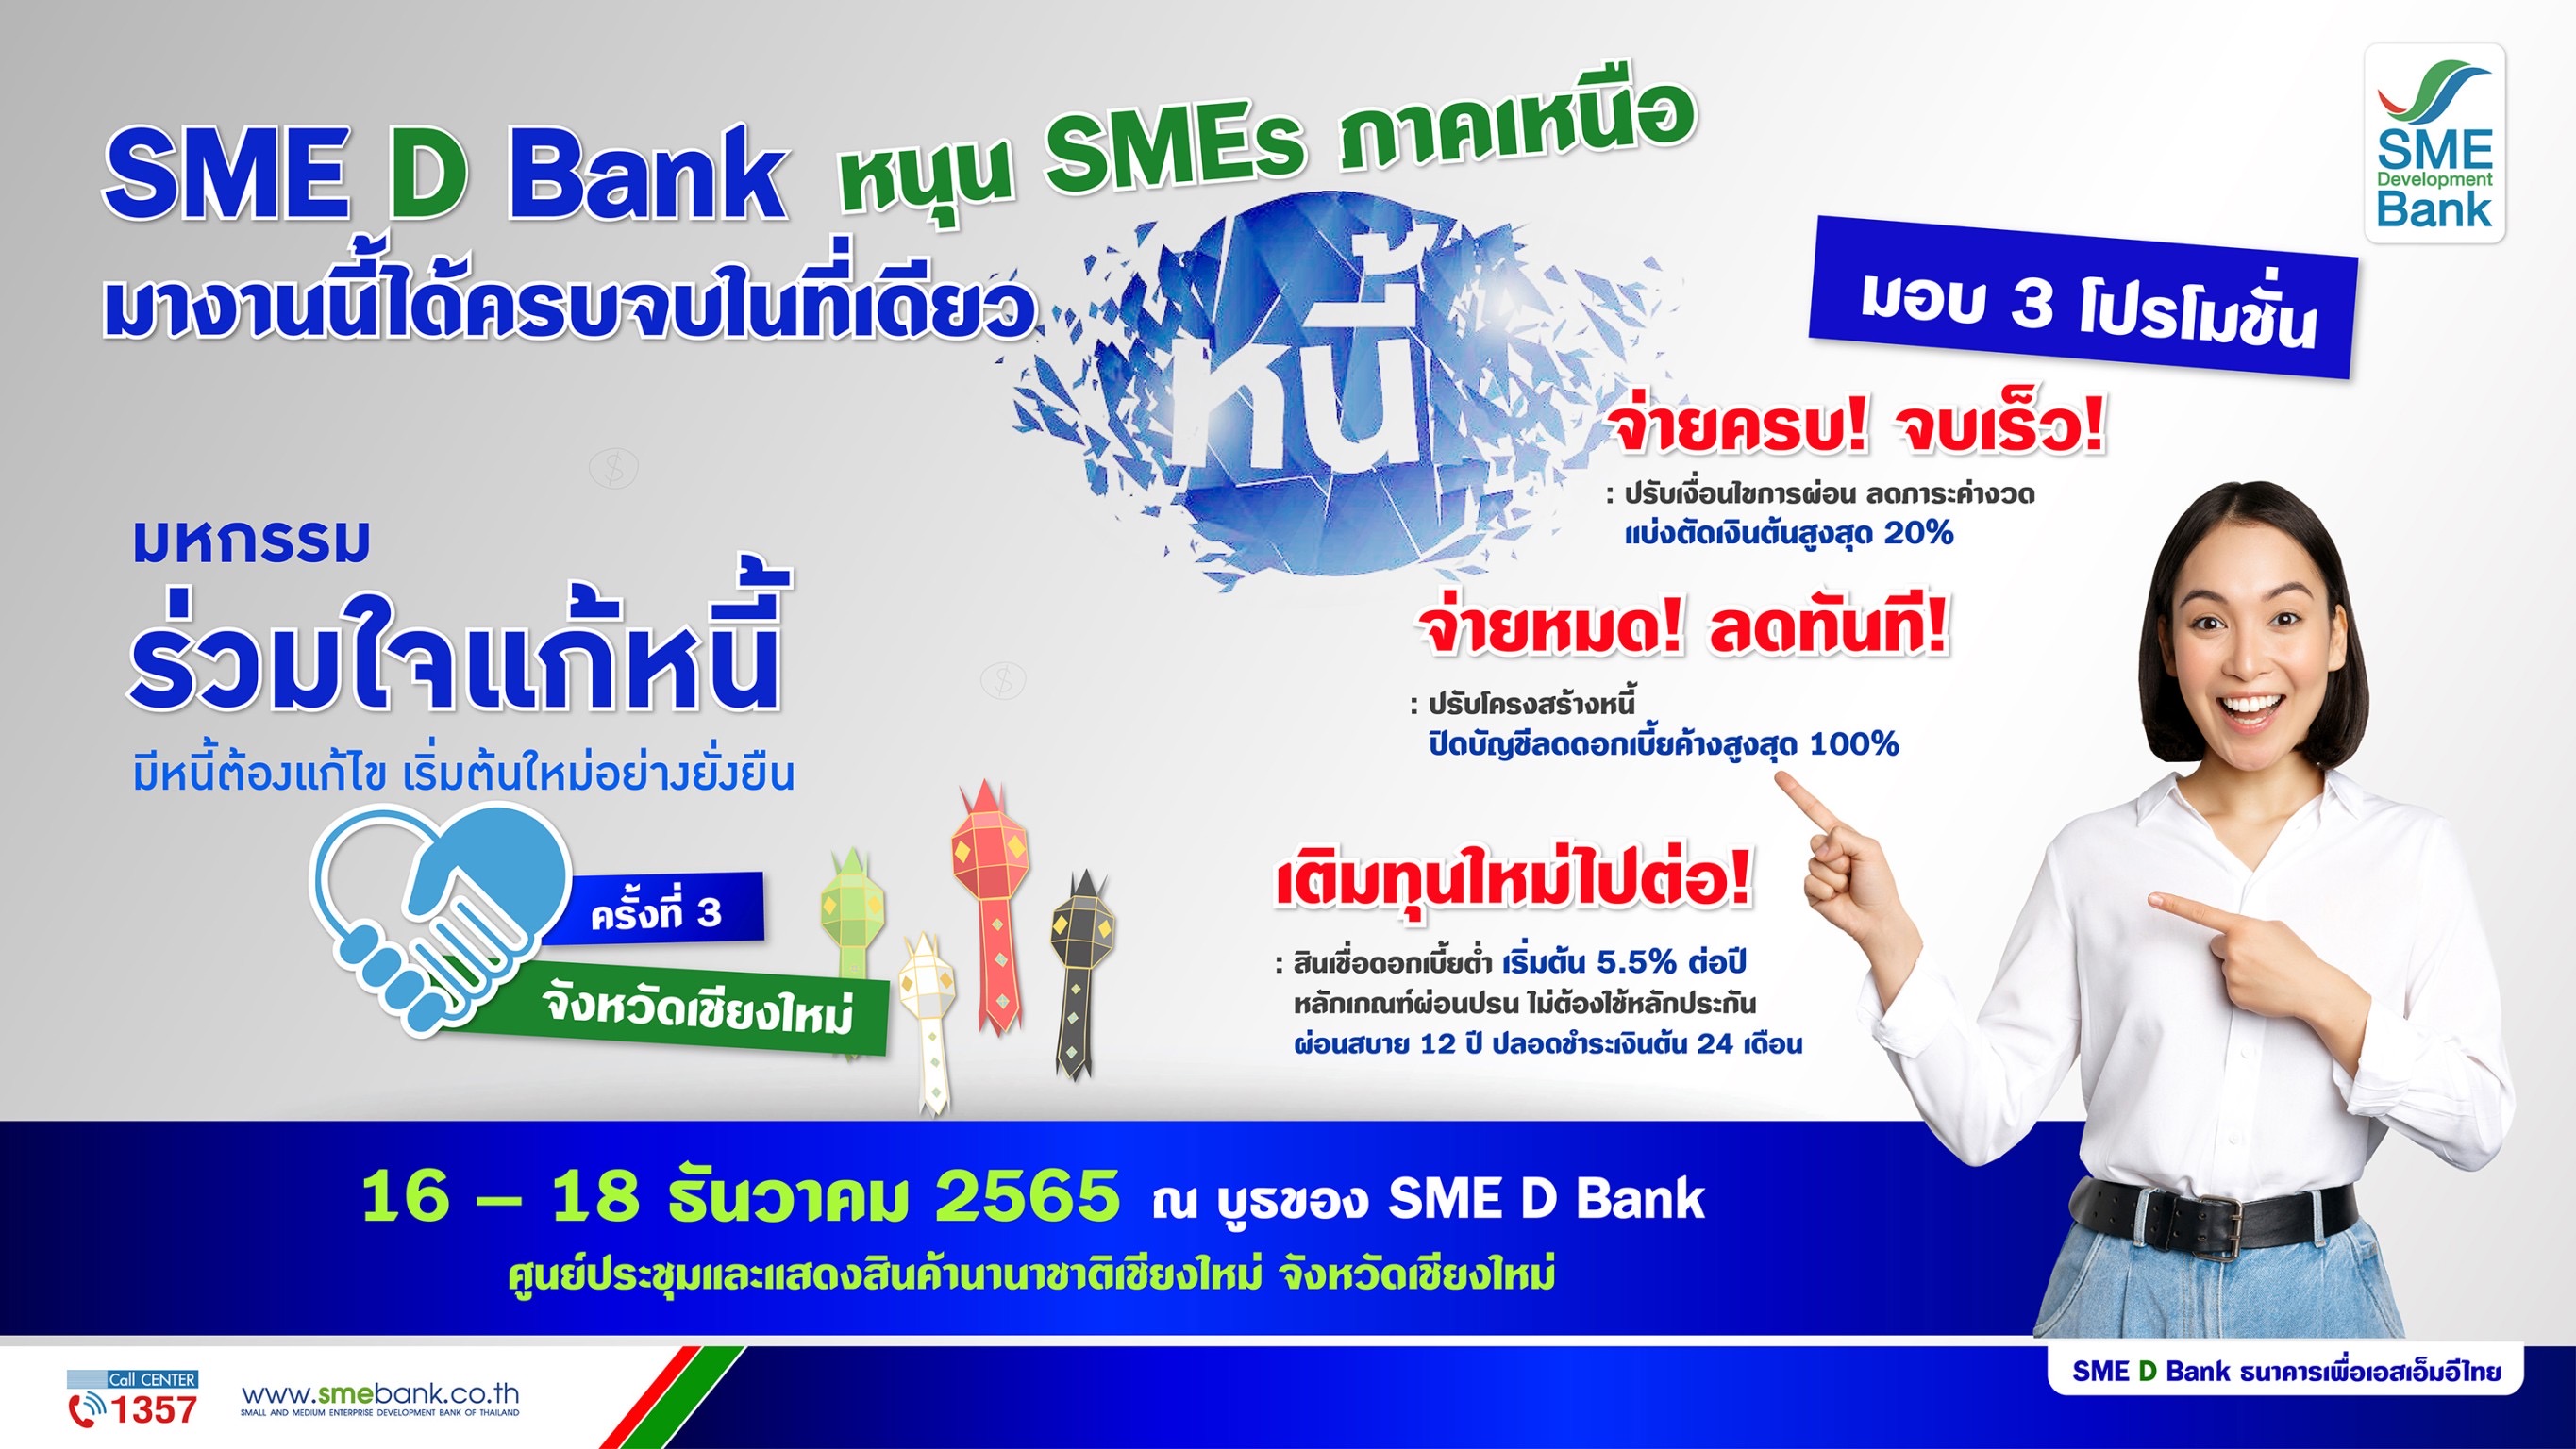 SME D Bank ยกขบวนขึ้นเชียงใหม่ ร่วมงาน ‘มหกรรมร่วมใจแก้หนี้ฯ’ ครั้งที่ 3